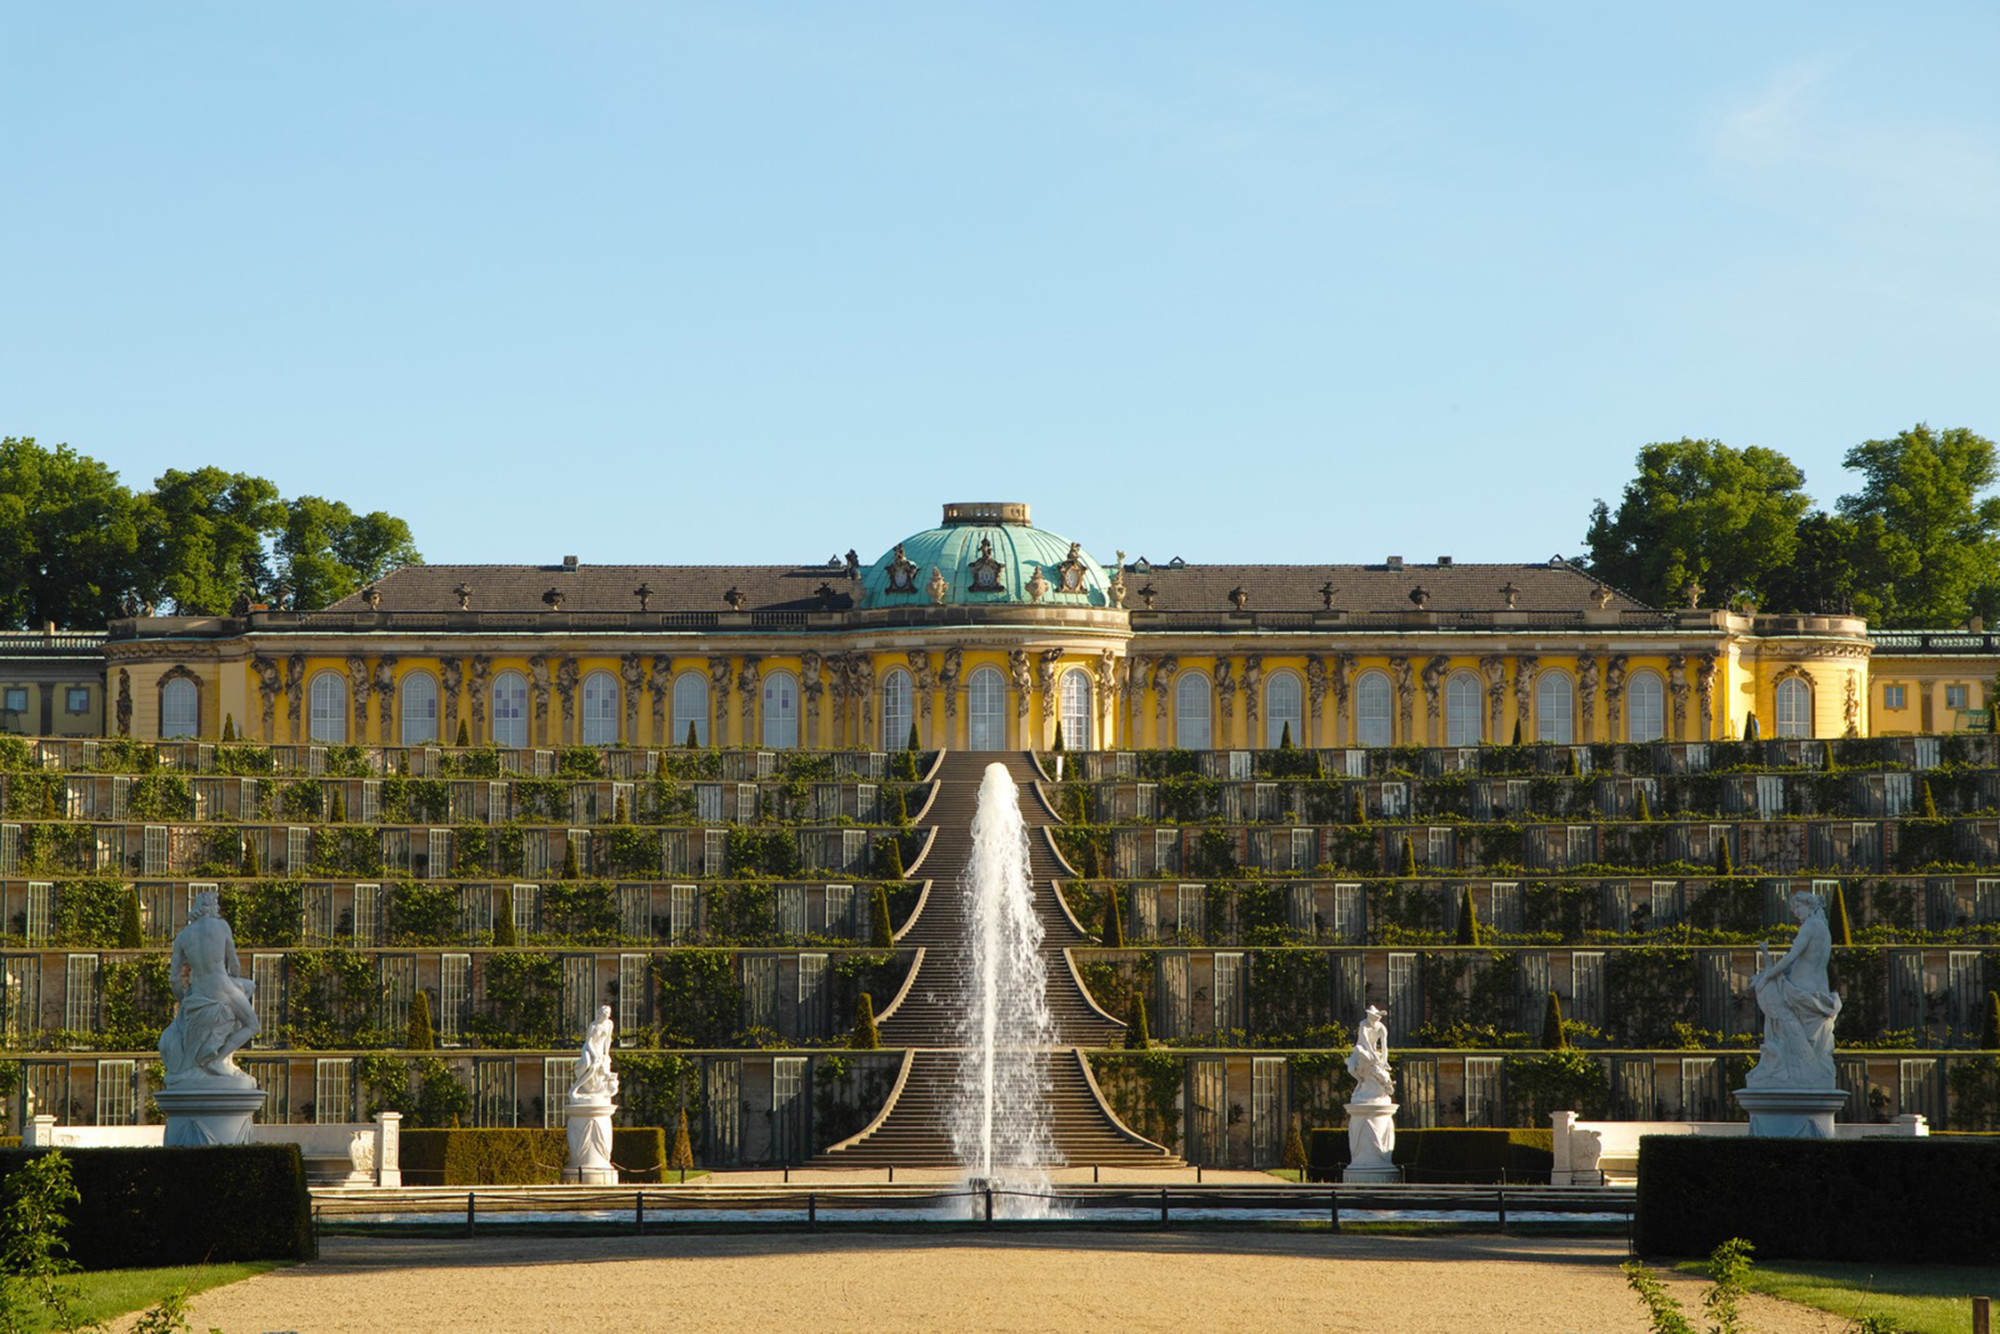 Сан-суси, потсдам, германия: описание парка и дворца с фото